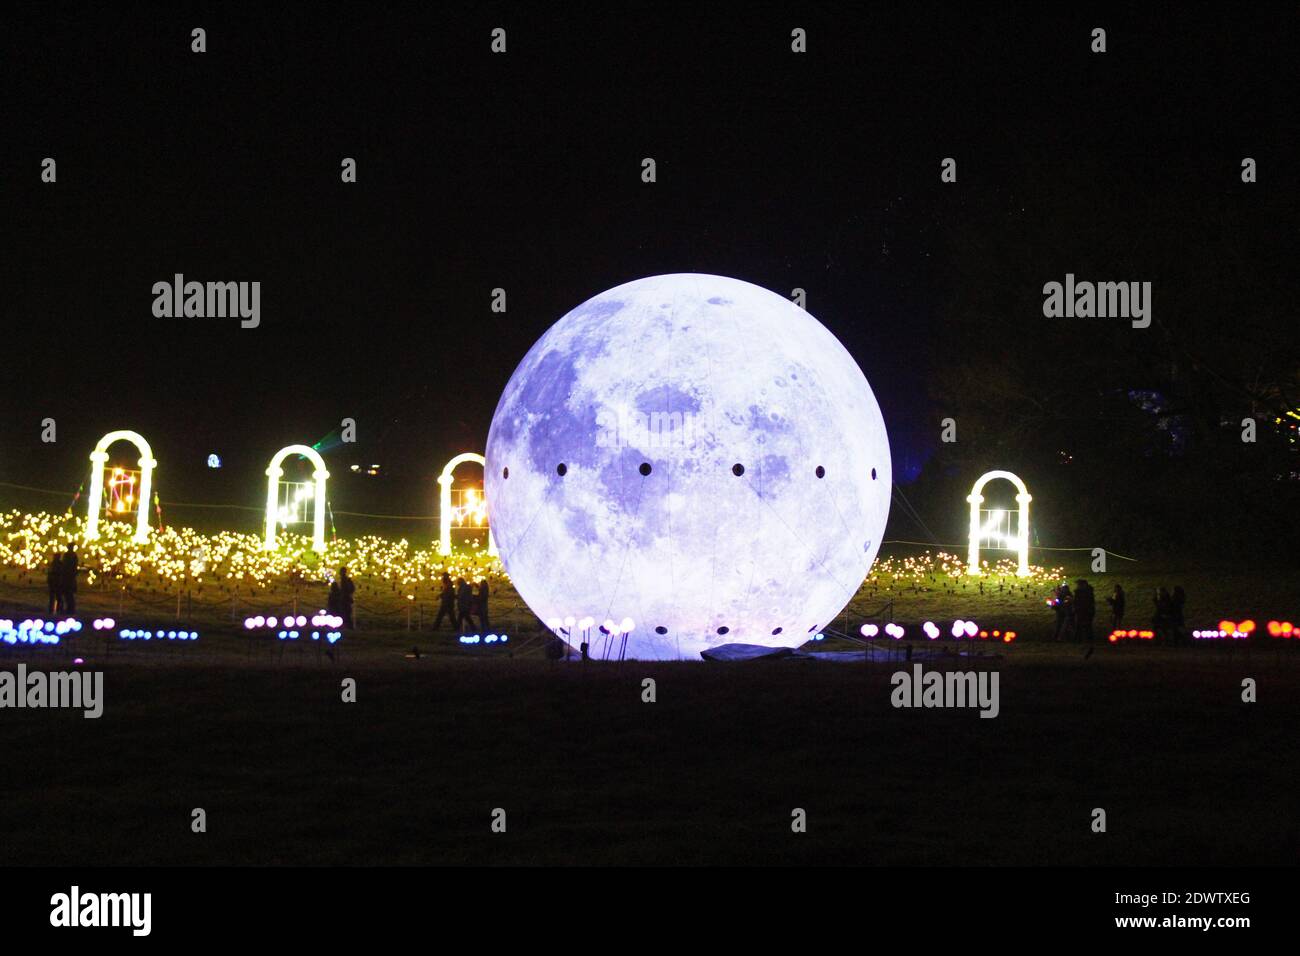 La luna gigante iluminada y las puertas, iluminan los linternas de exhibición en el festival Lighttopia 2020 en Heaton Park, Manchester Foto de stock